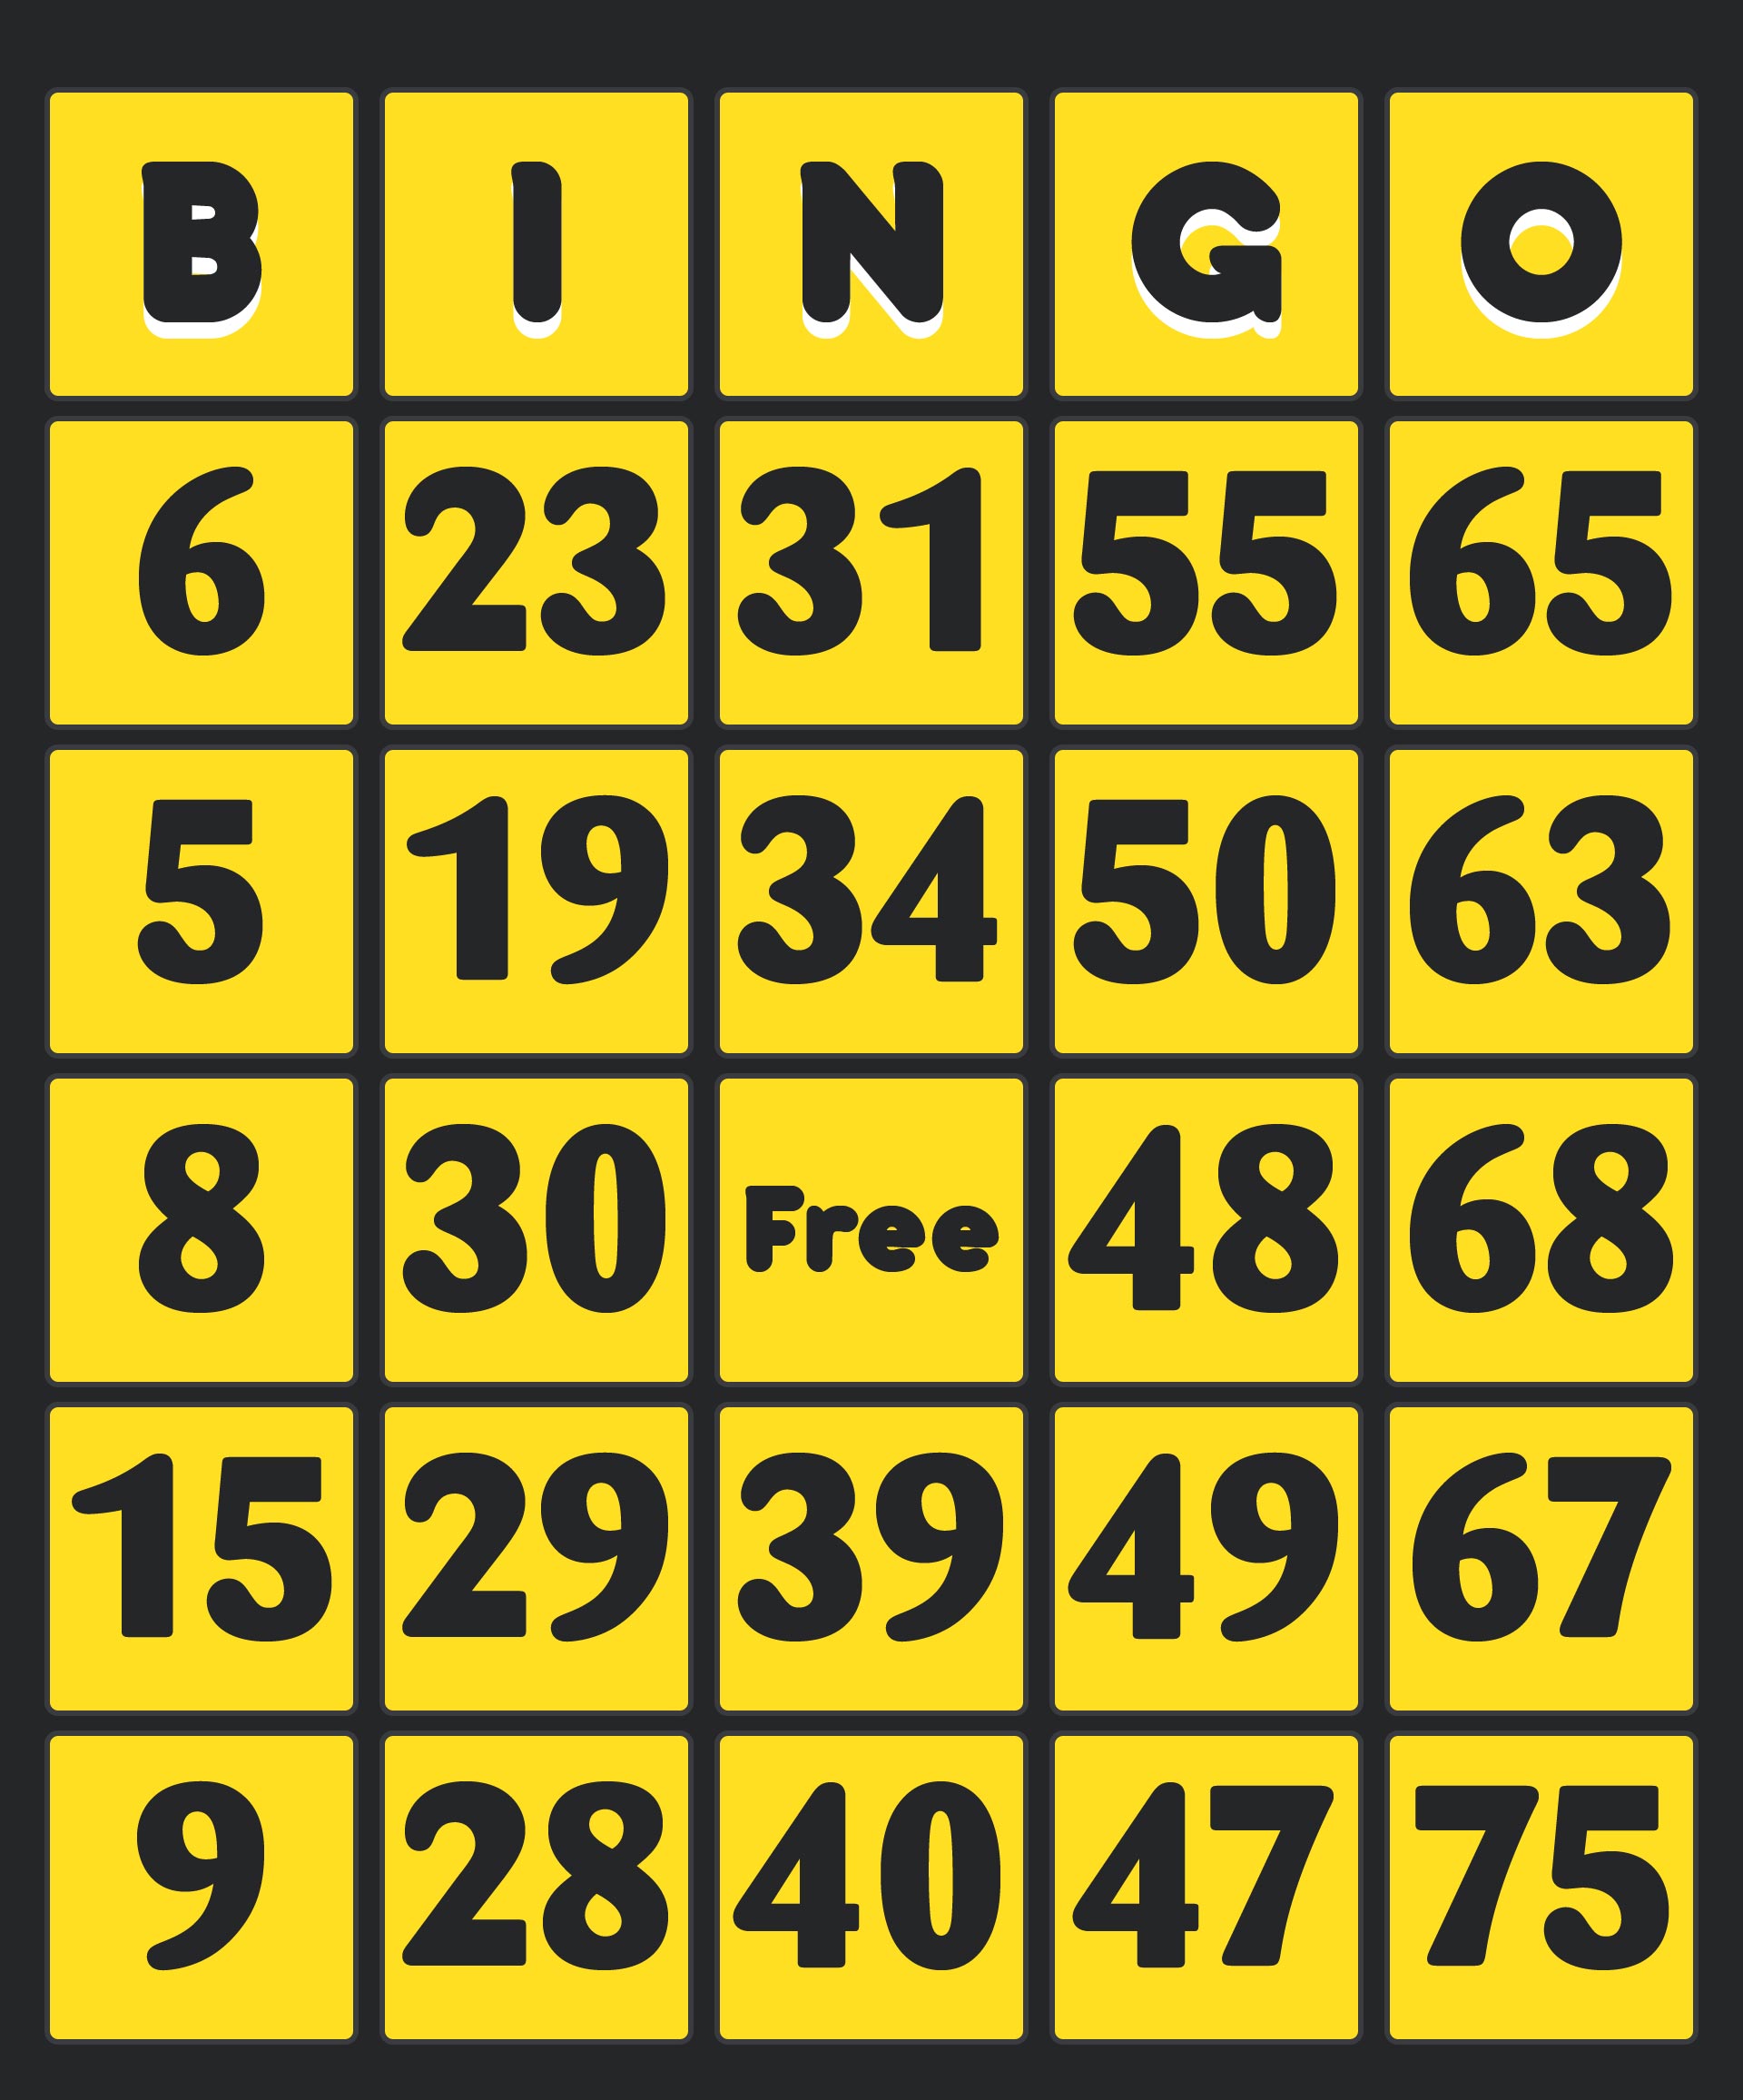 bingo-calling-cards-deck-aucune-cage-n-cessaire-prix-r-duit-global